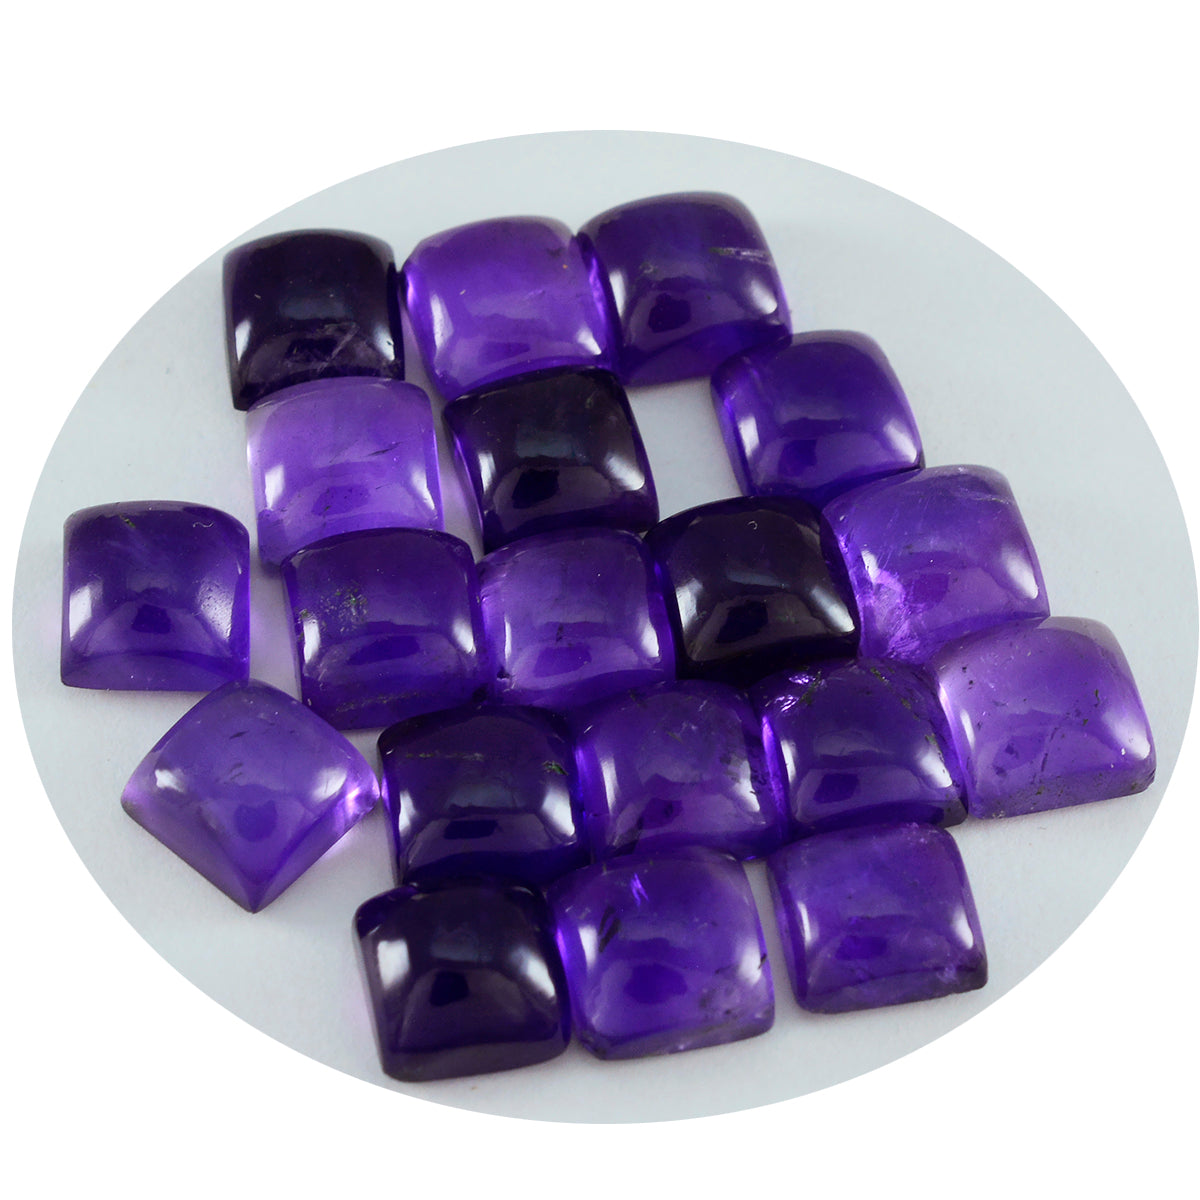 Riyogems – cabochon d'améthyste violette, 10x10mm, forme carrée, belle qualité, pierres précieuses en vrac, 1 pièce